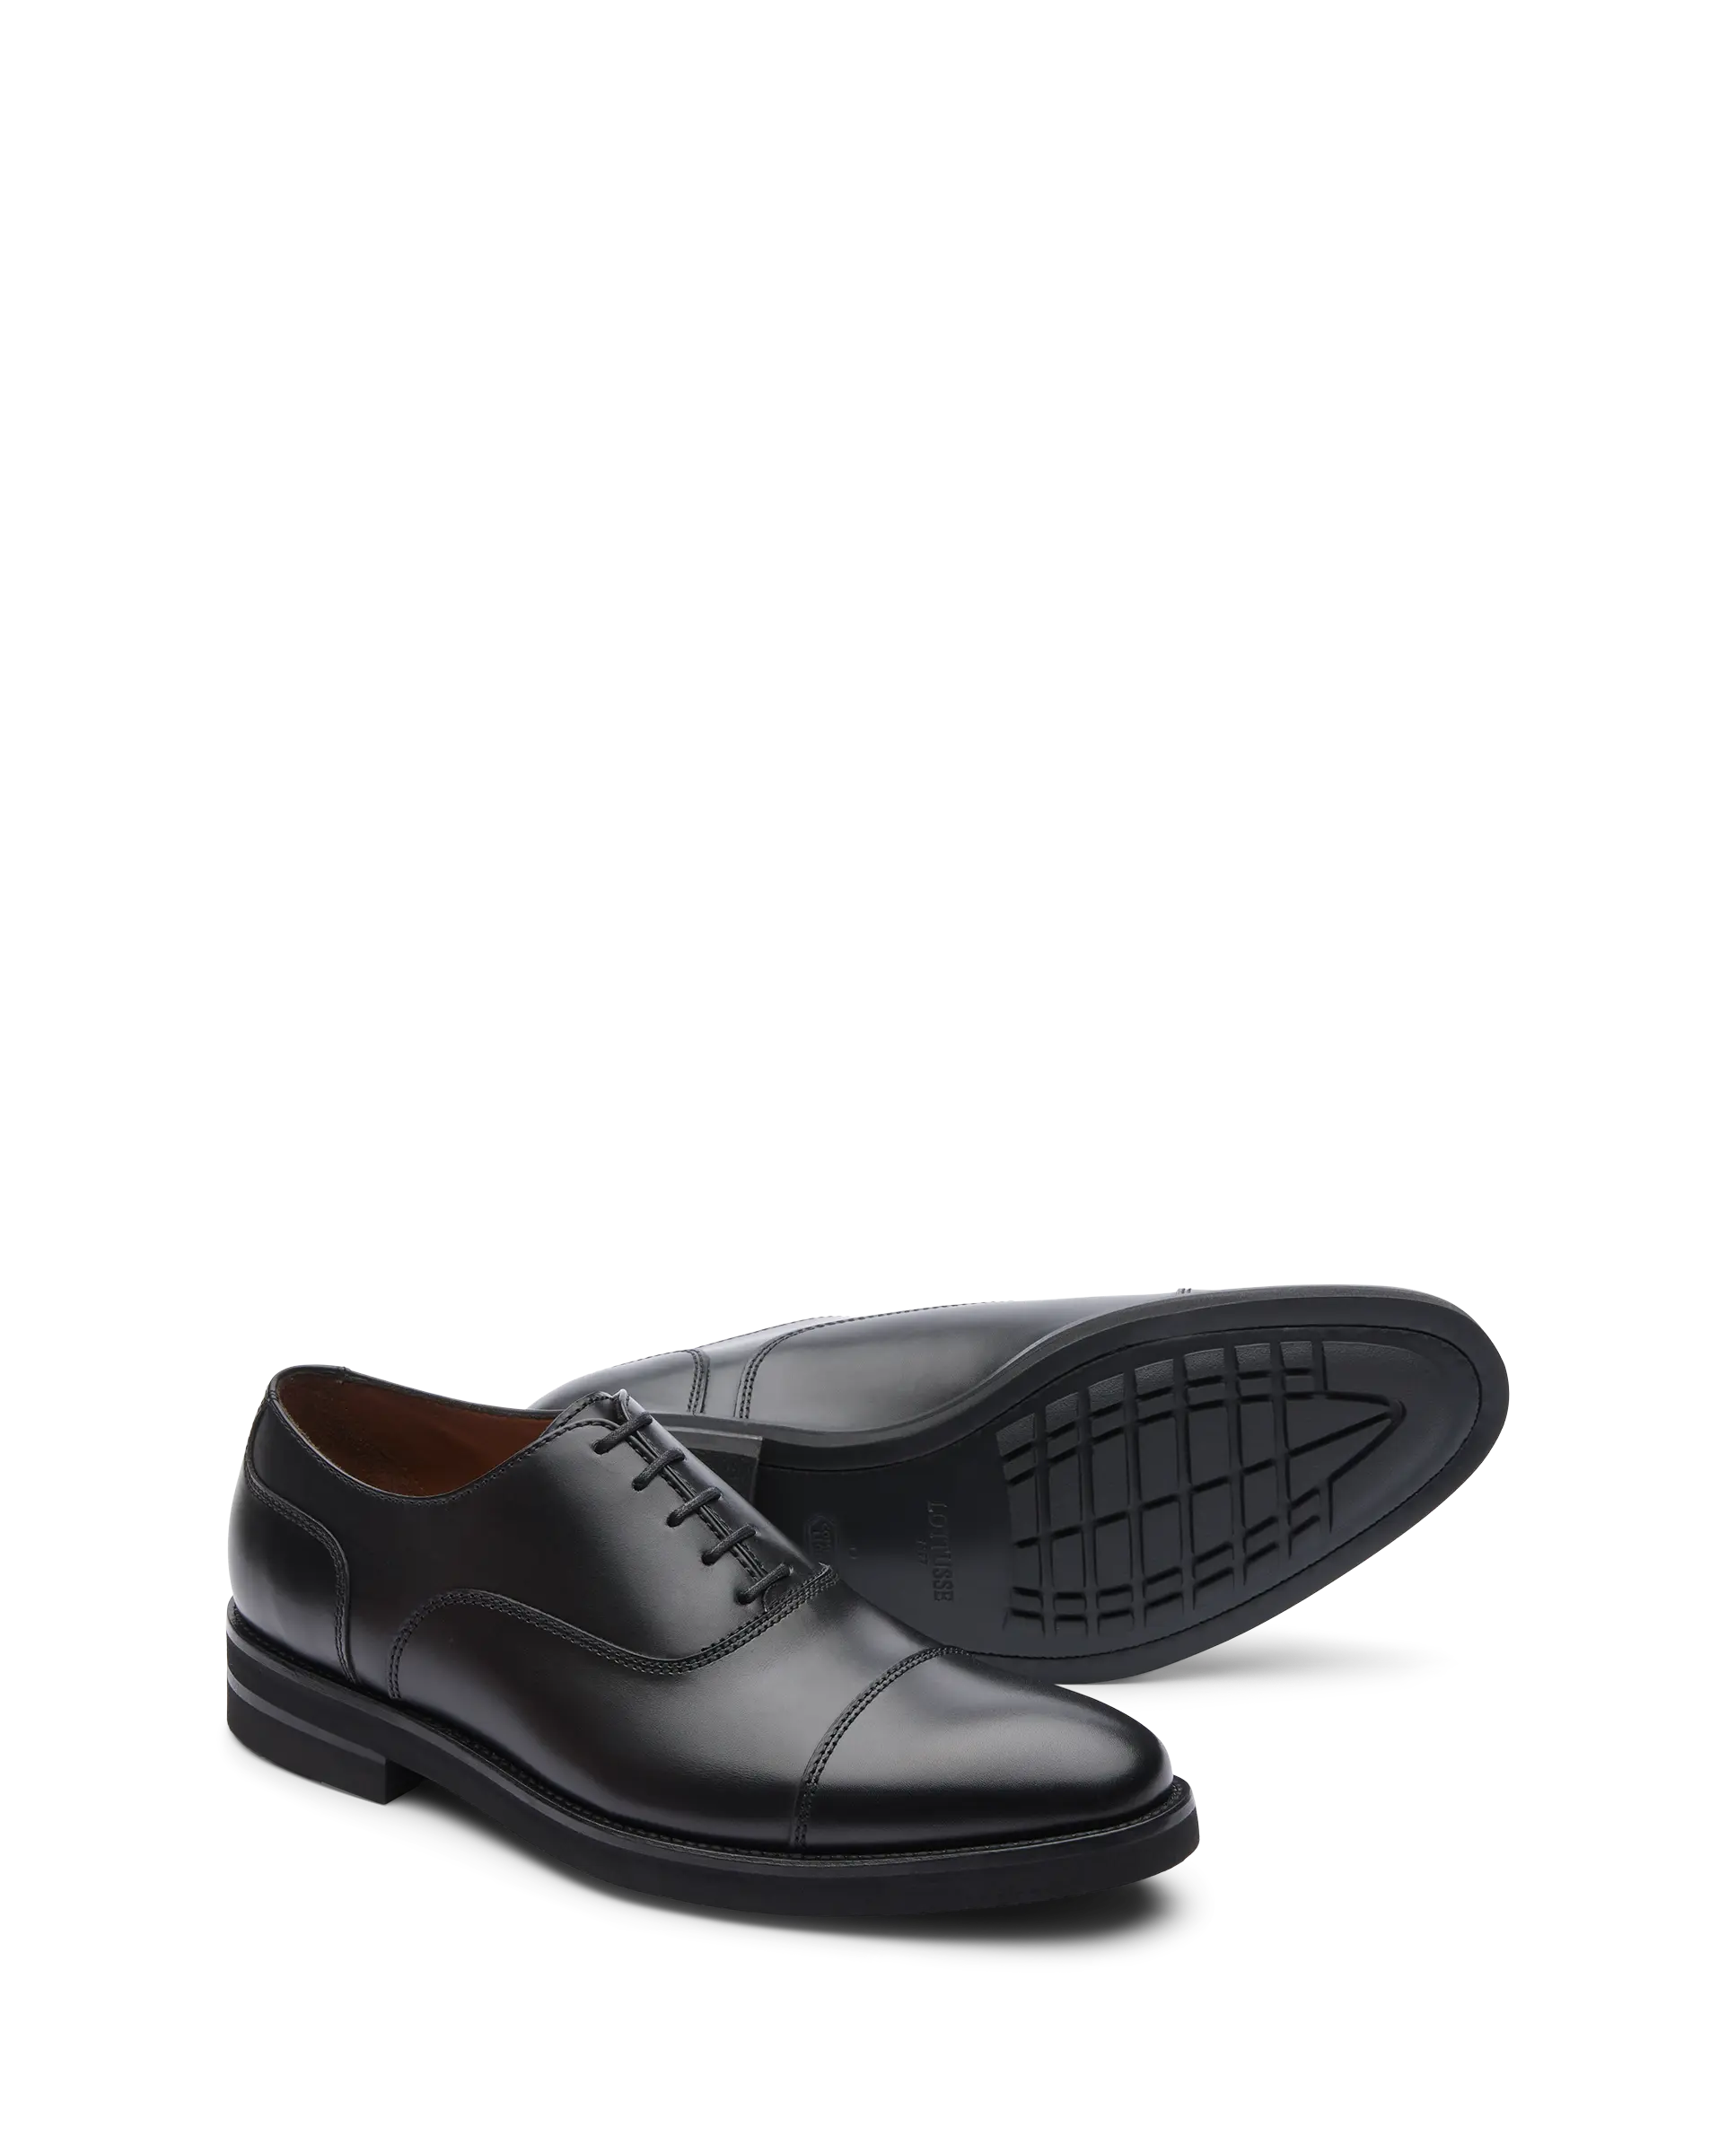 Zapatos Oxford De La Marca Lottusse Para Hombre Modelo Holborn Oxfords De Vacuno Cepillado En Color Negro